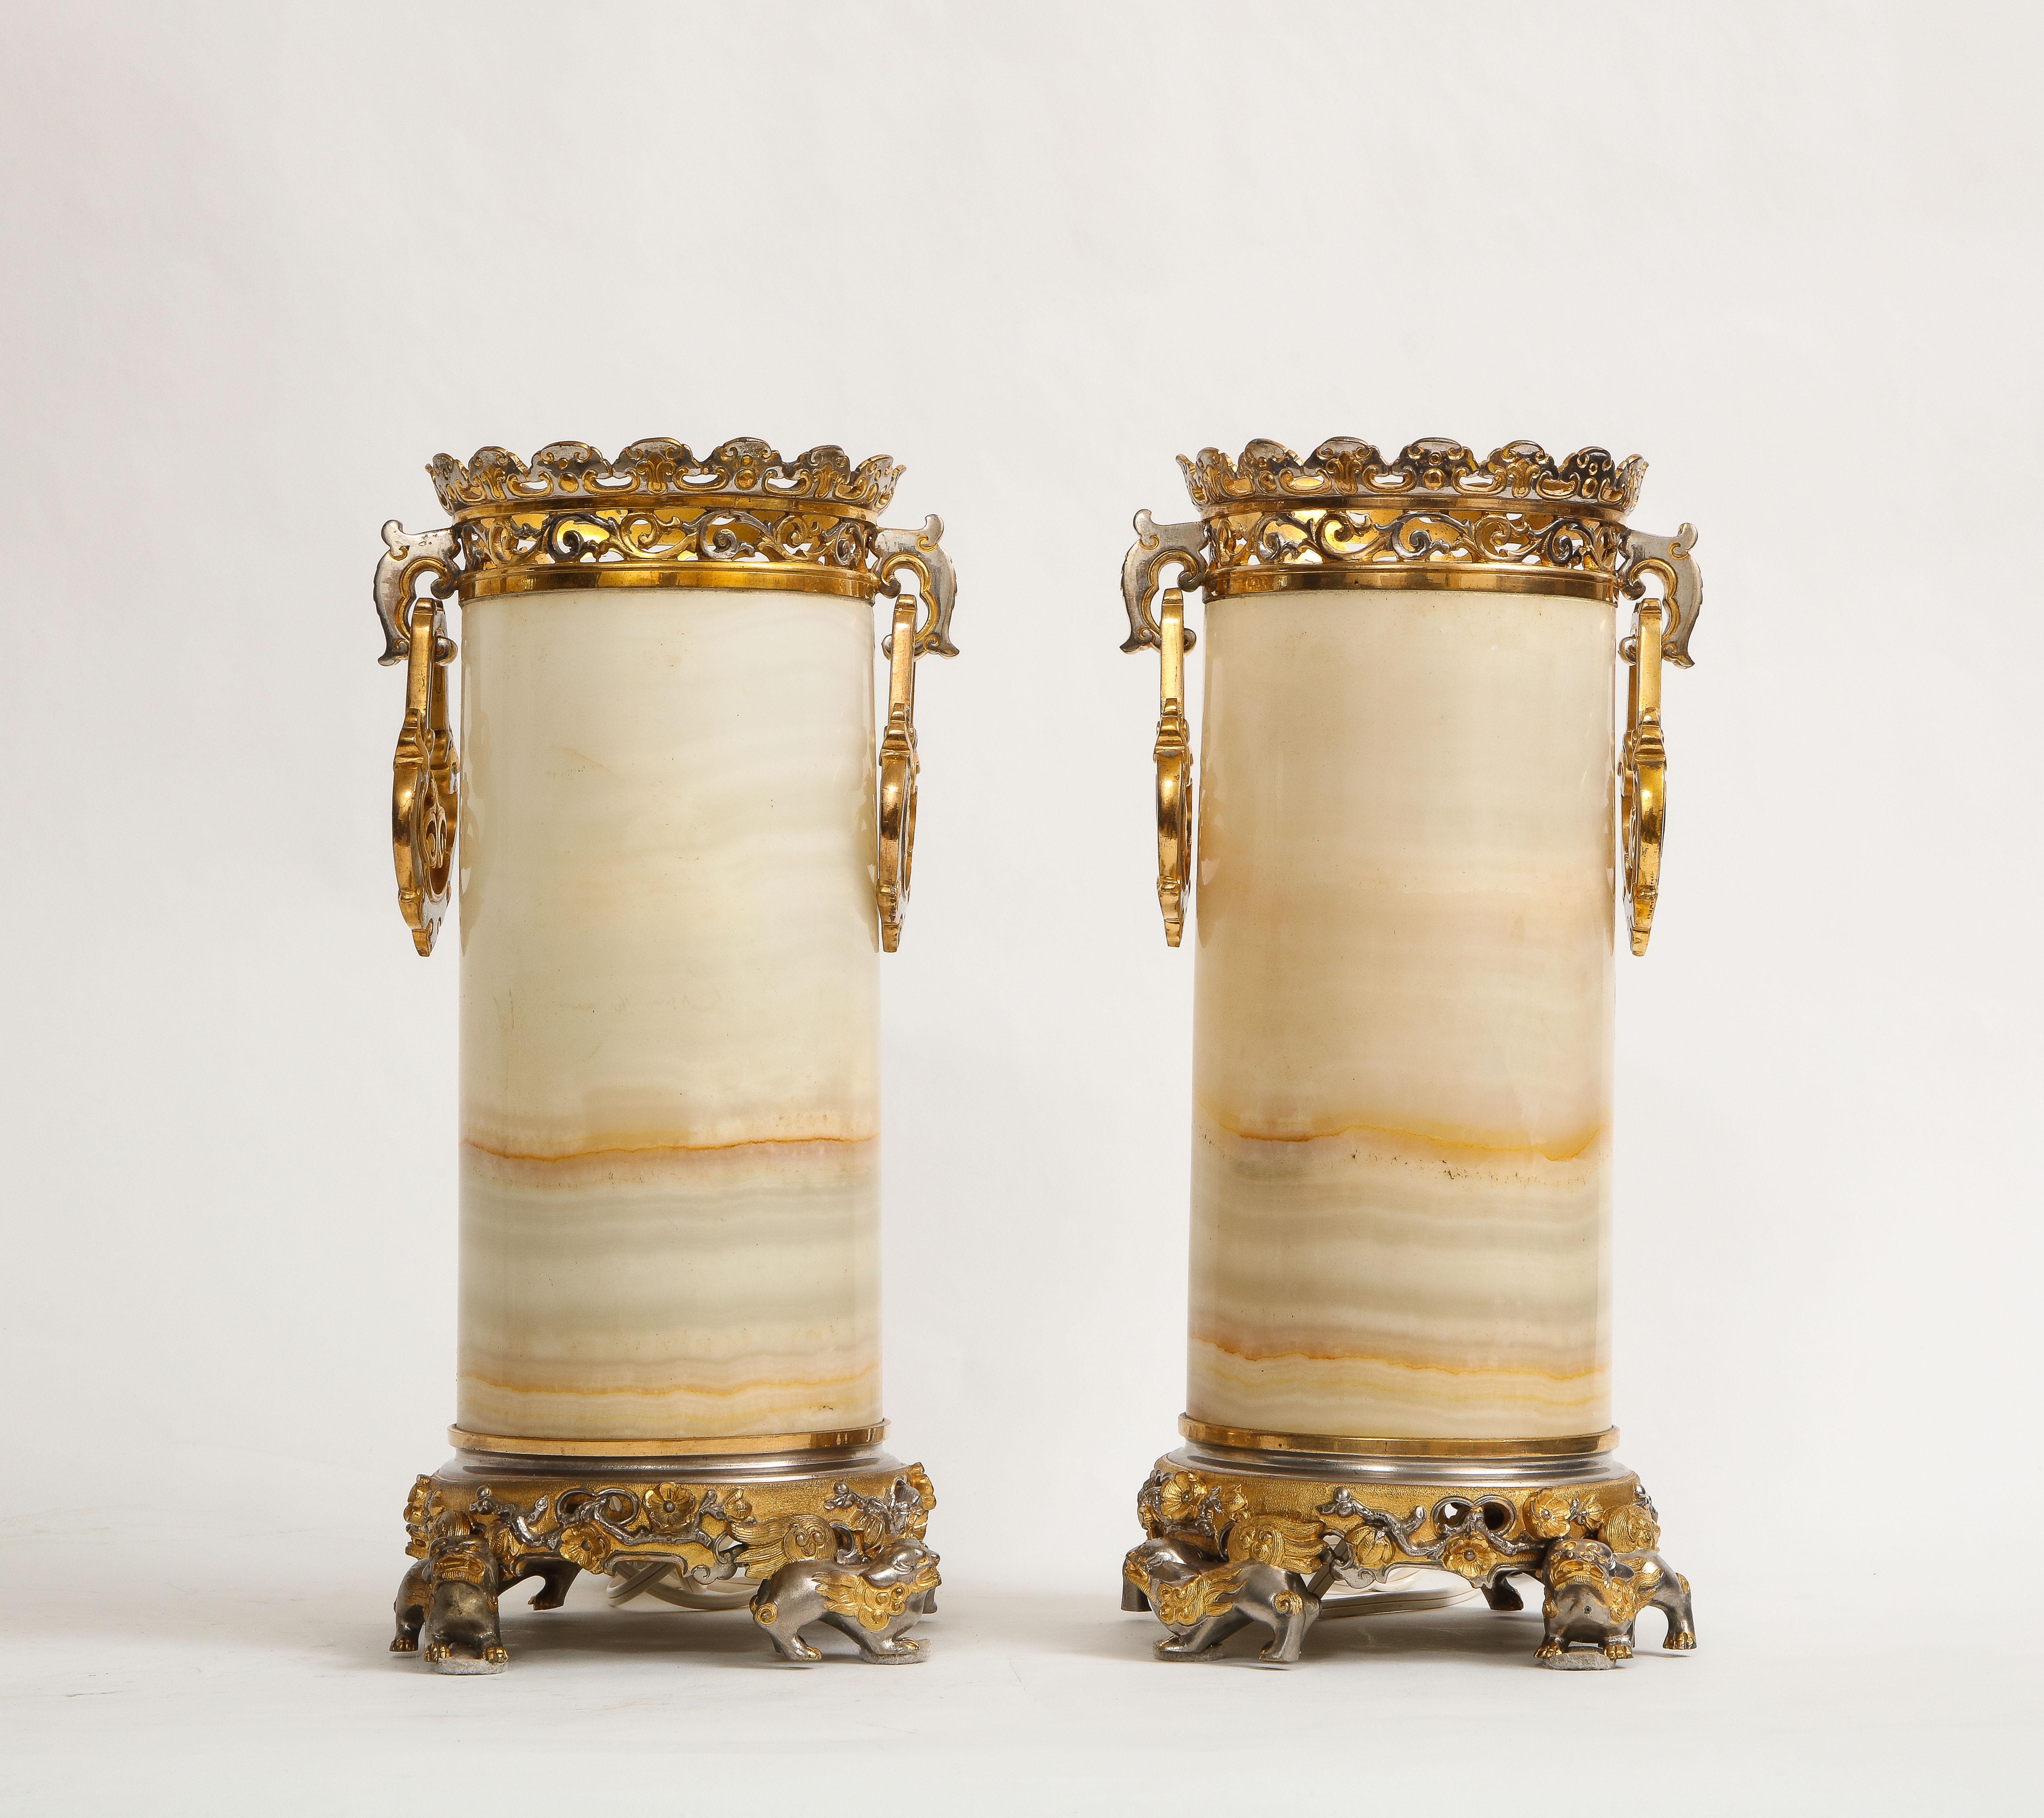 Merveilleuse paire de vases en albâtre au miel montés sur bronze argenté et doré, de style Edouard Lievre, datant du 19ème siècle. Chacun d'entre eux est magnifiquement sculpté à la main dans une pierre d'albâtre naturelle au miel. Les montures